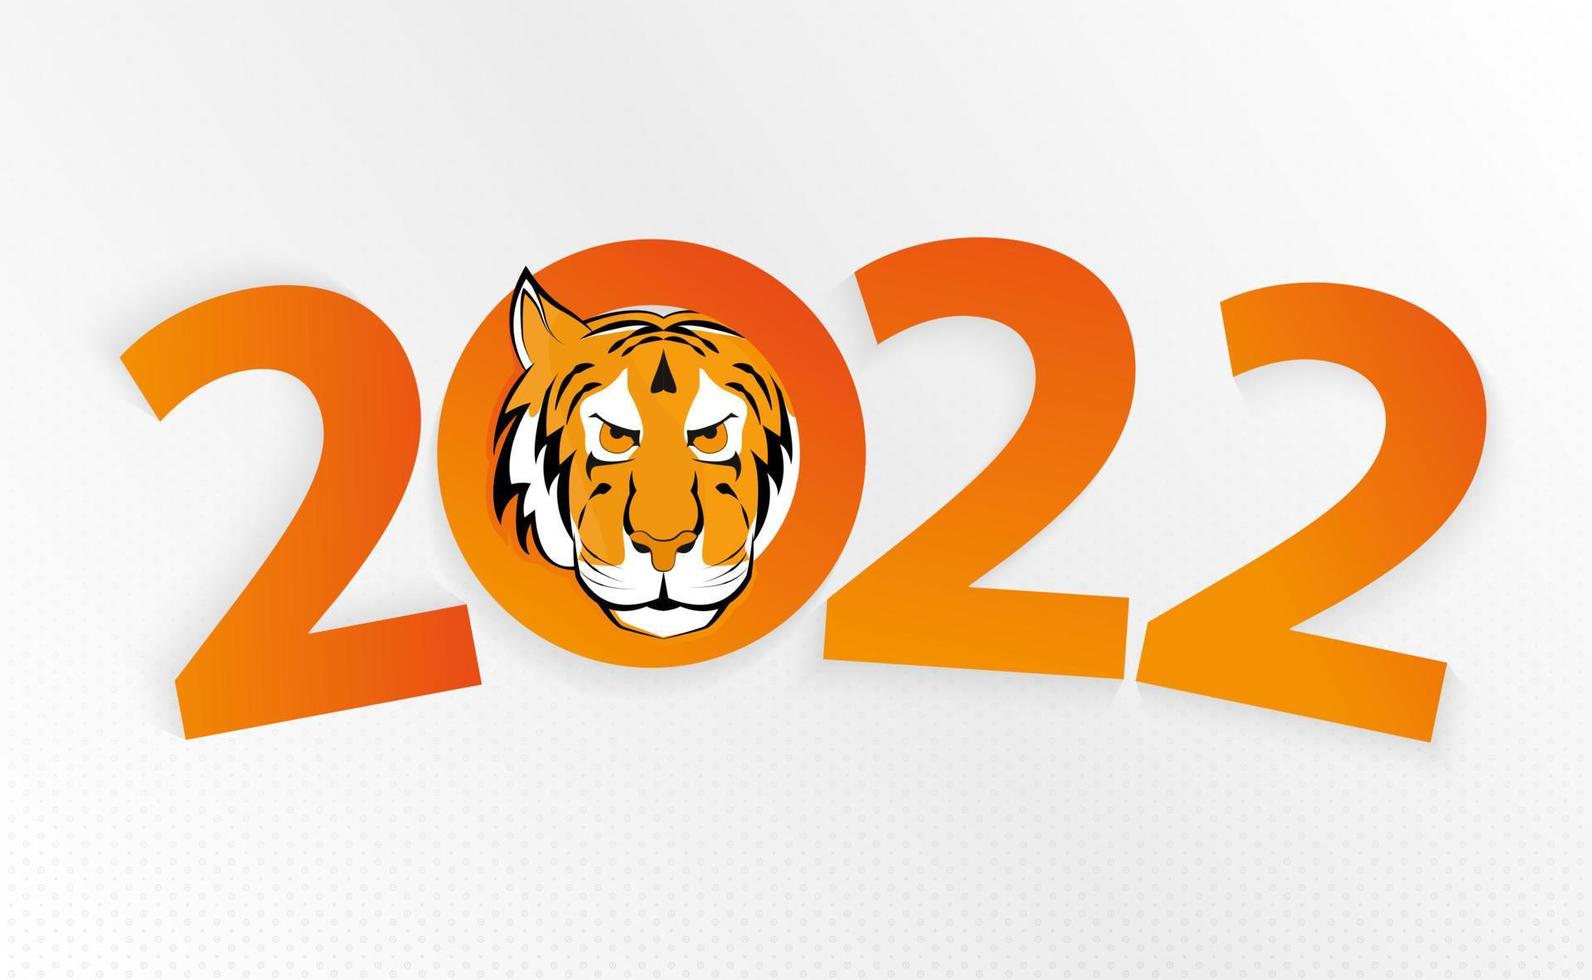 chinees nieuwjaar 2022 jaar van de tijger. chinese dierenriem-tijger. vector